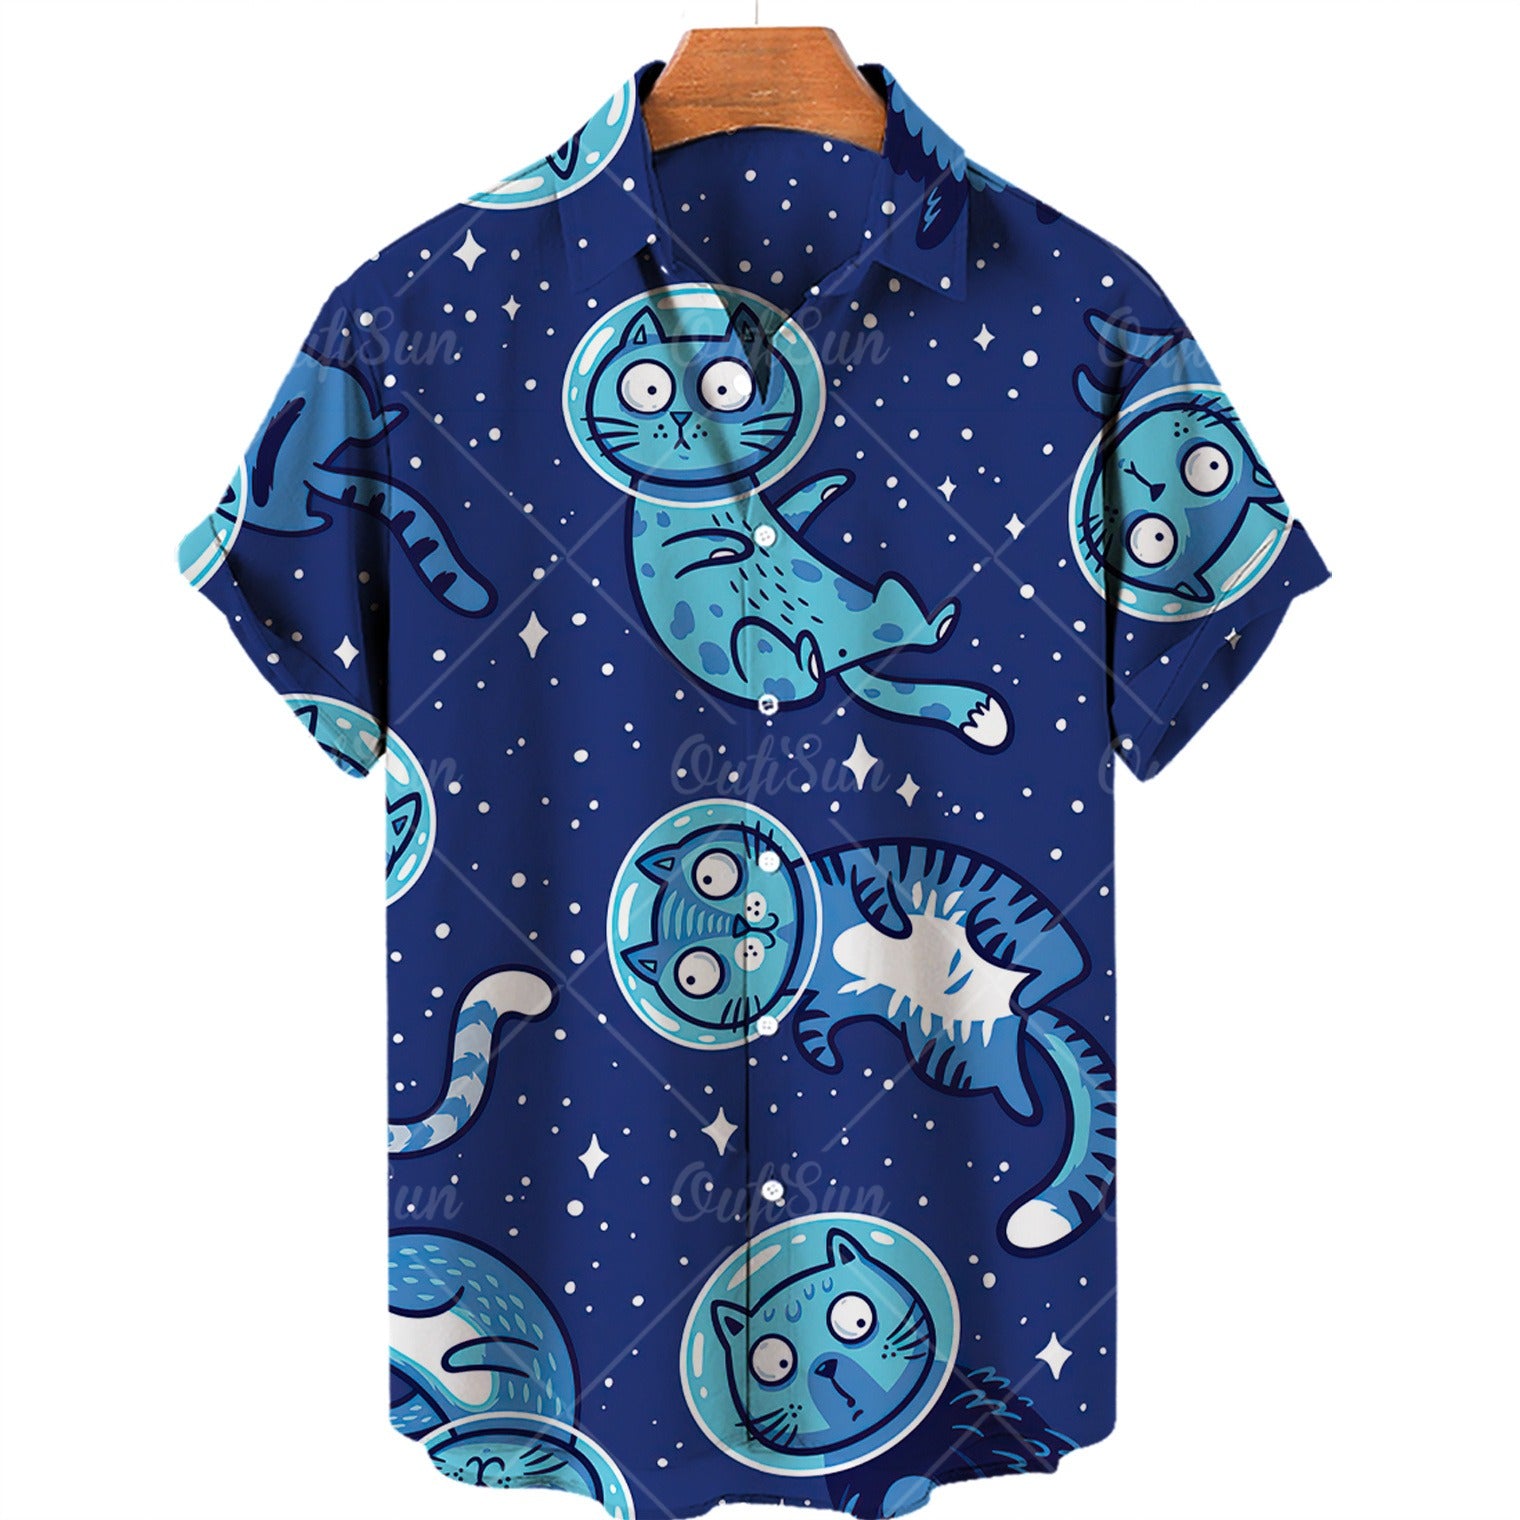 AstroKitty Shirt